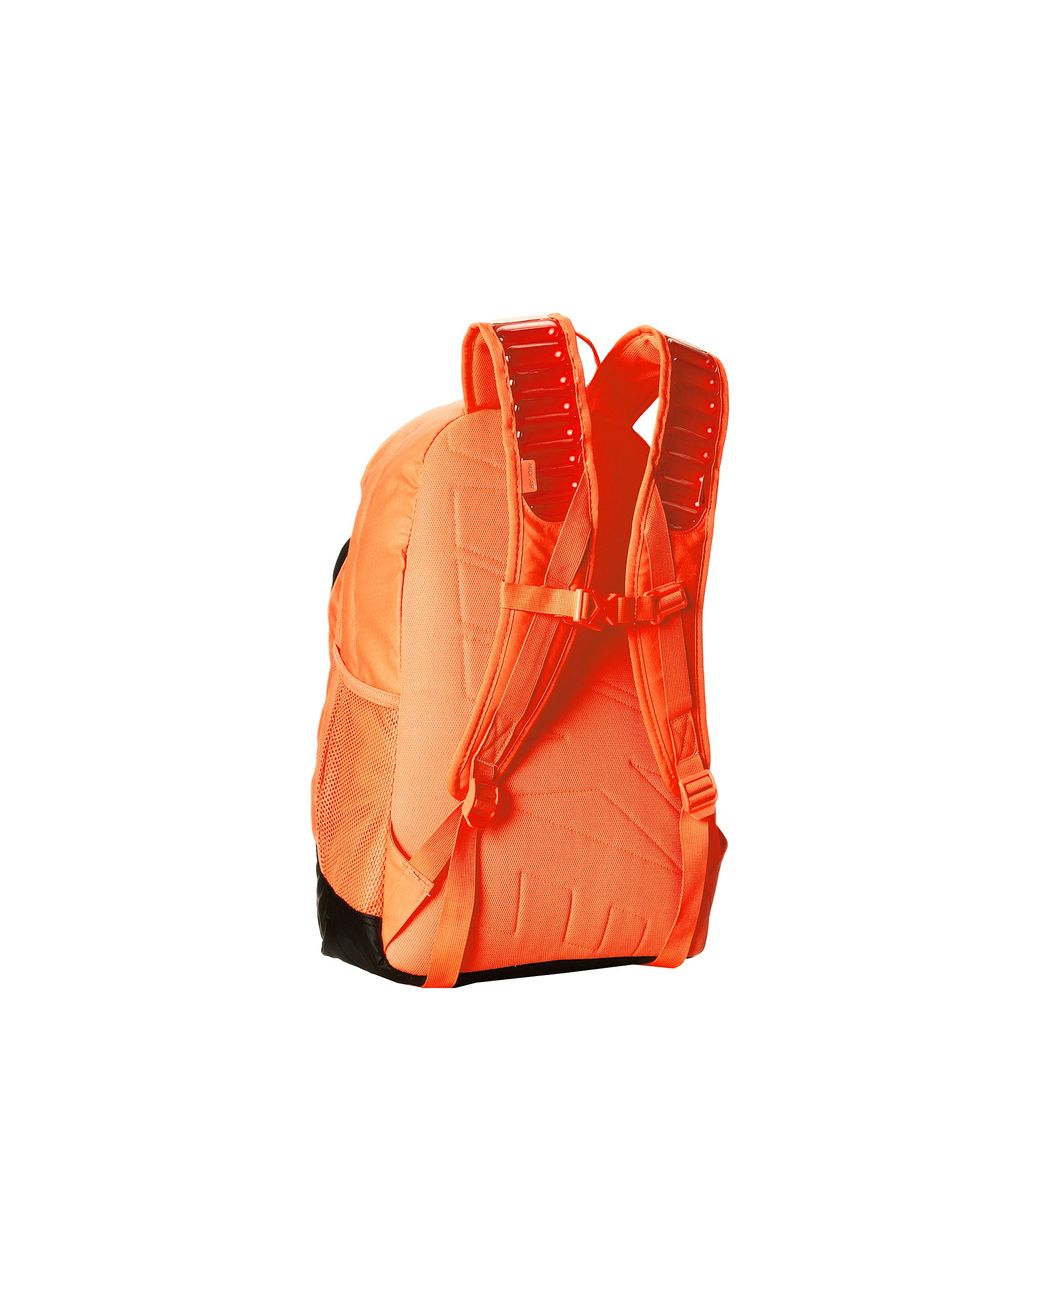 Nike Max Air Vapor Backpack in Orange | Lyst